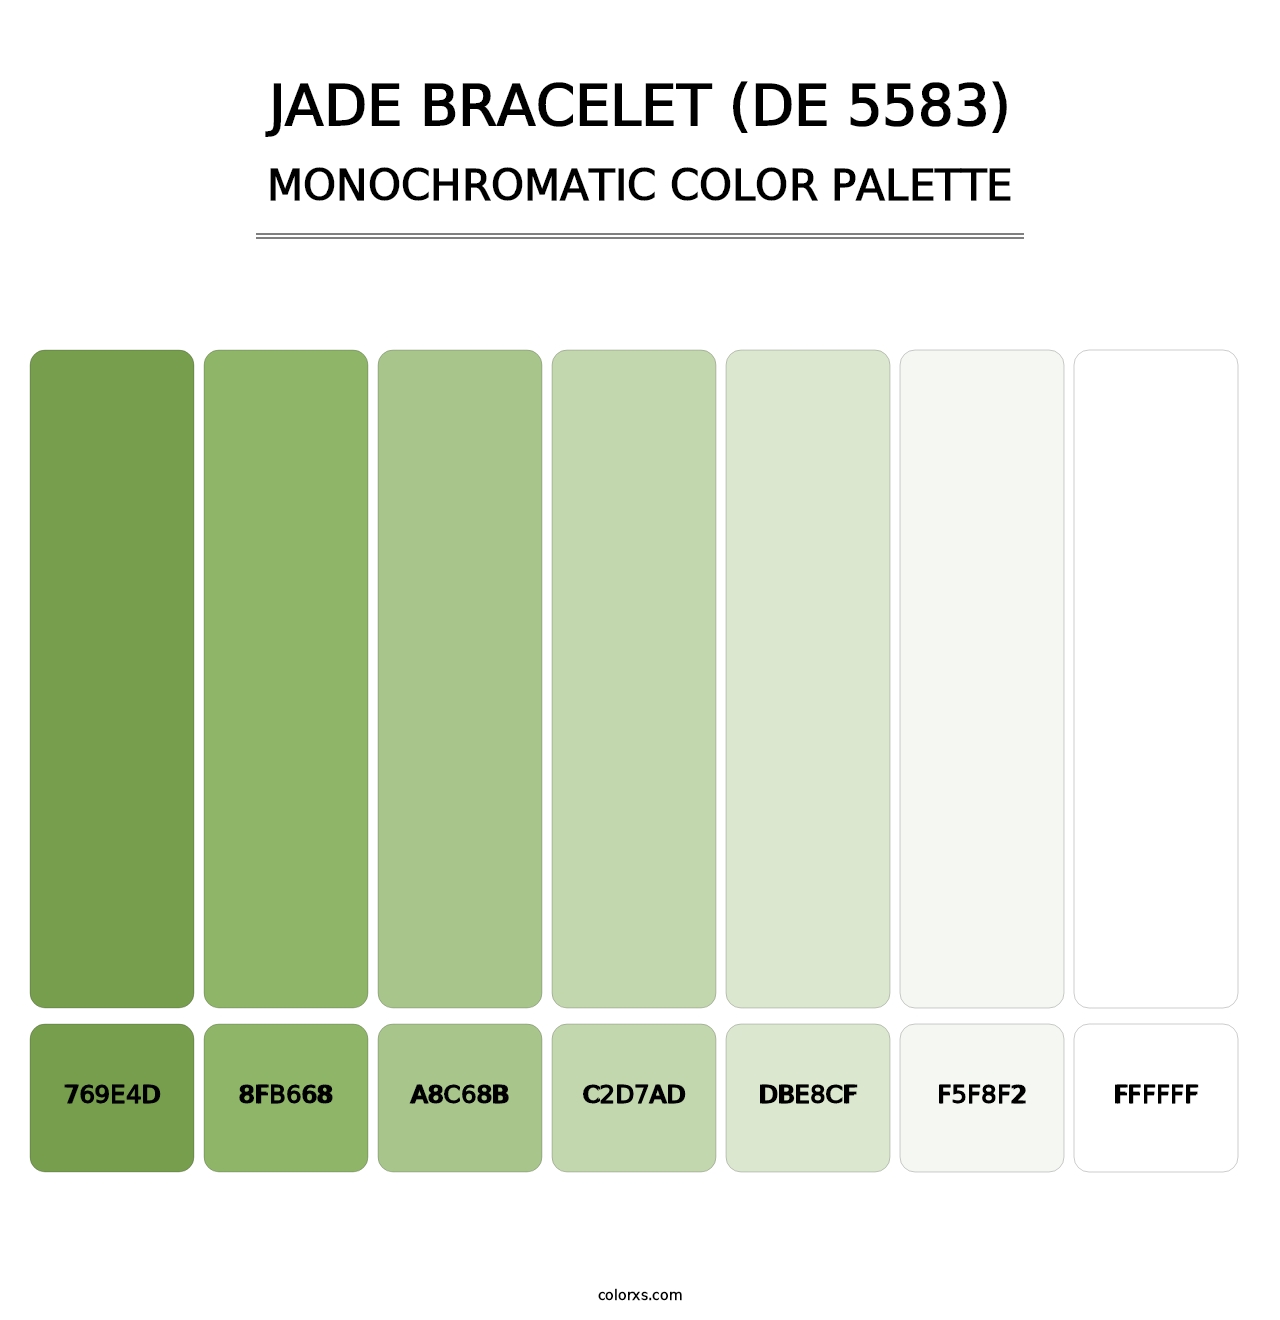 Jade Bracelet (DE 5583) - Monochromatic Color Palette